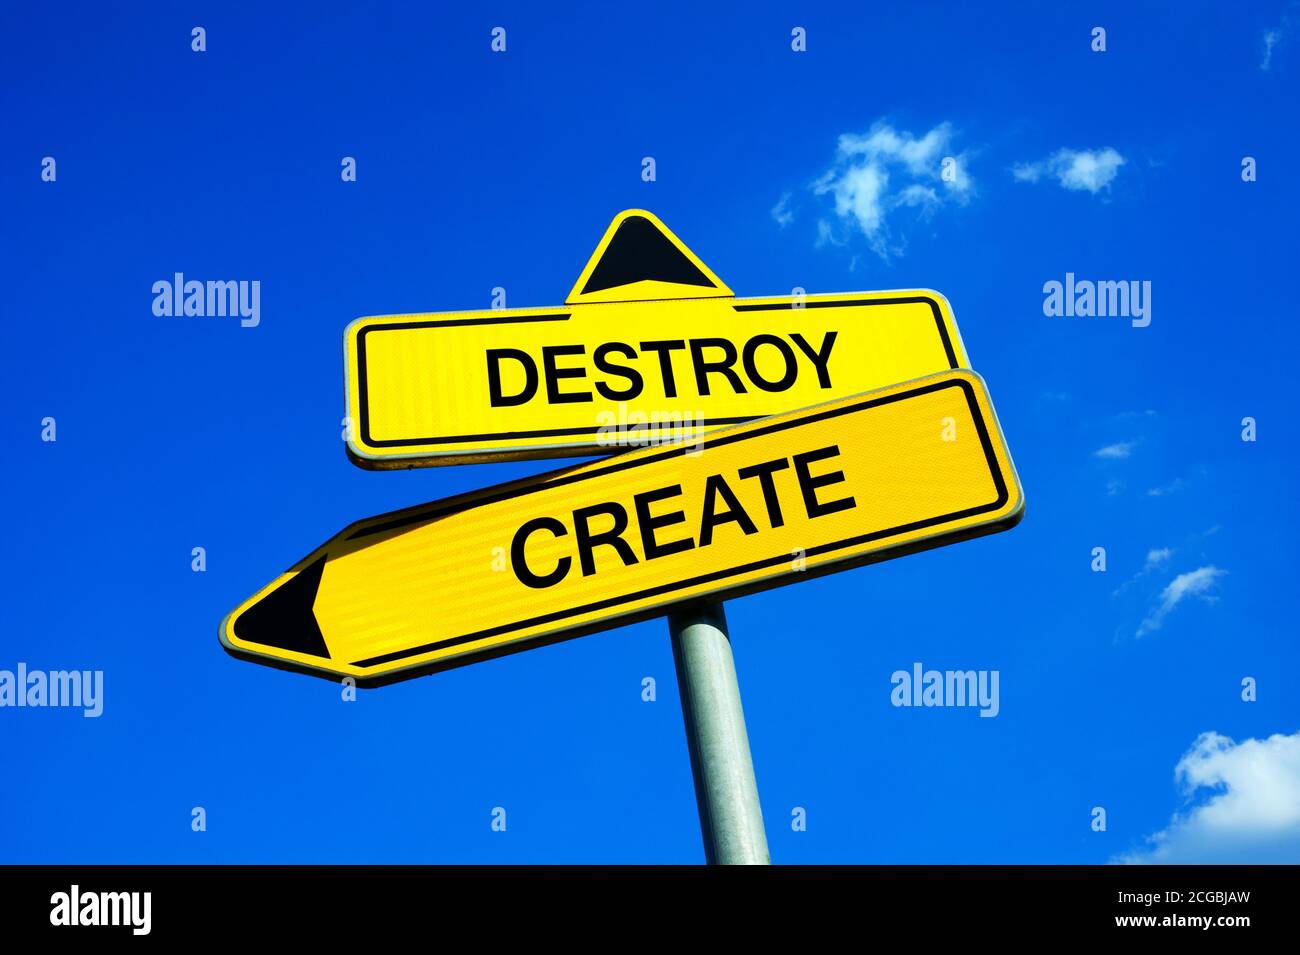 Destroy or Create - Verkehrszeichen mit zwei Optionen - negative Zerstörung, Abriss und Verwüstung vs positive Kreativität, Gebäude und Produktion Stockfoto